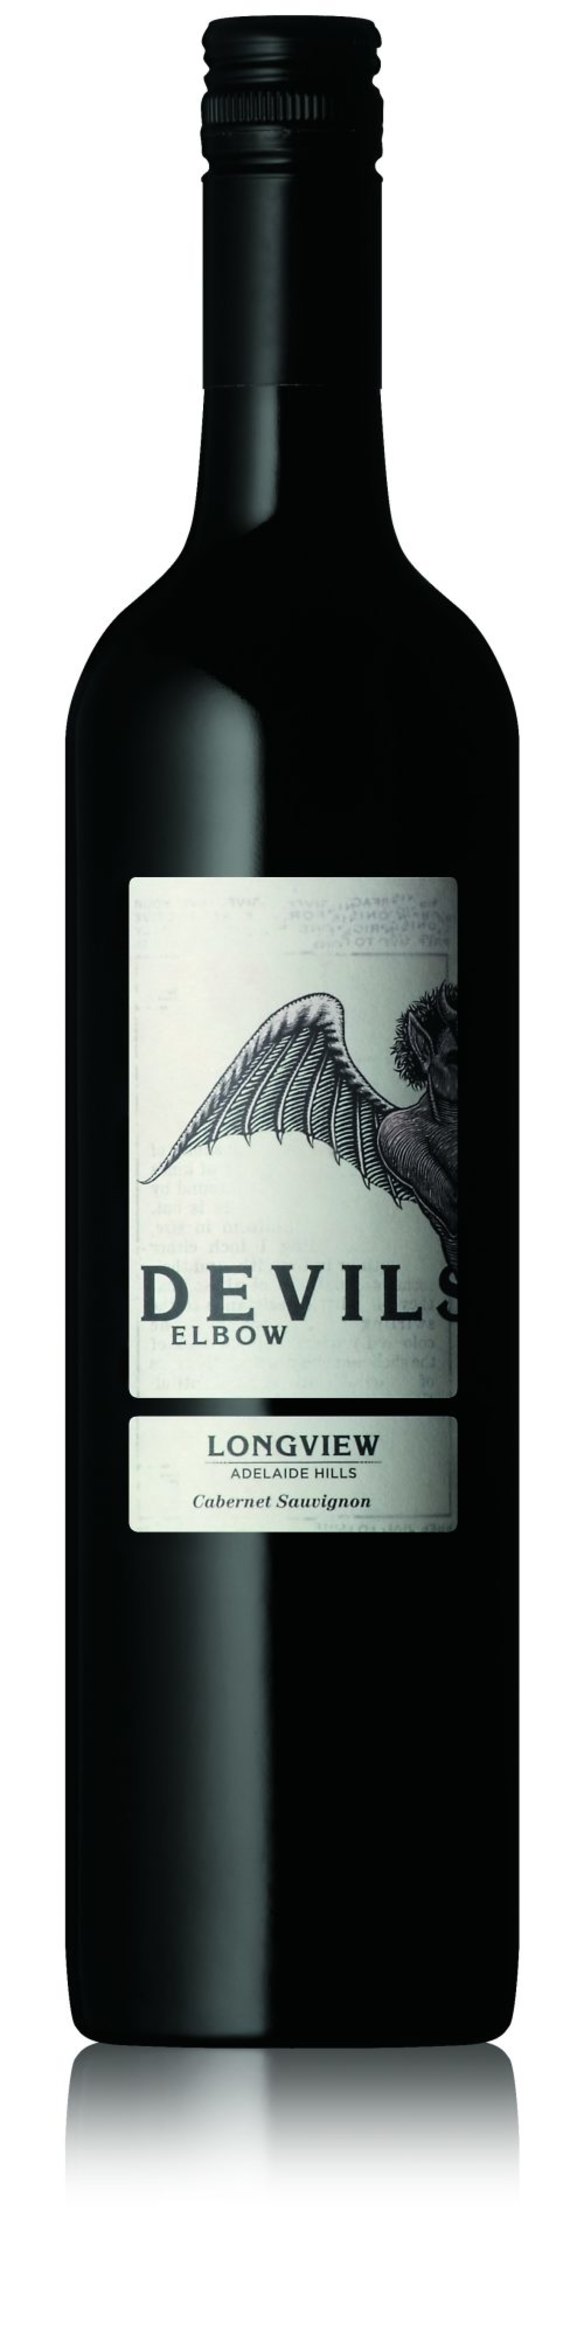 6. Longview 2012 Devil's Elbow Cabernet Sauvignon, $27